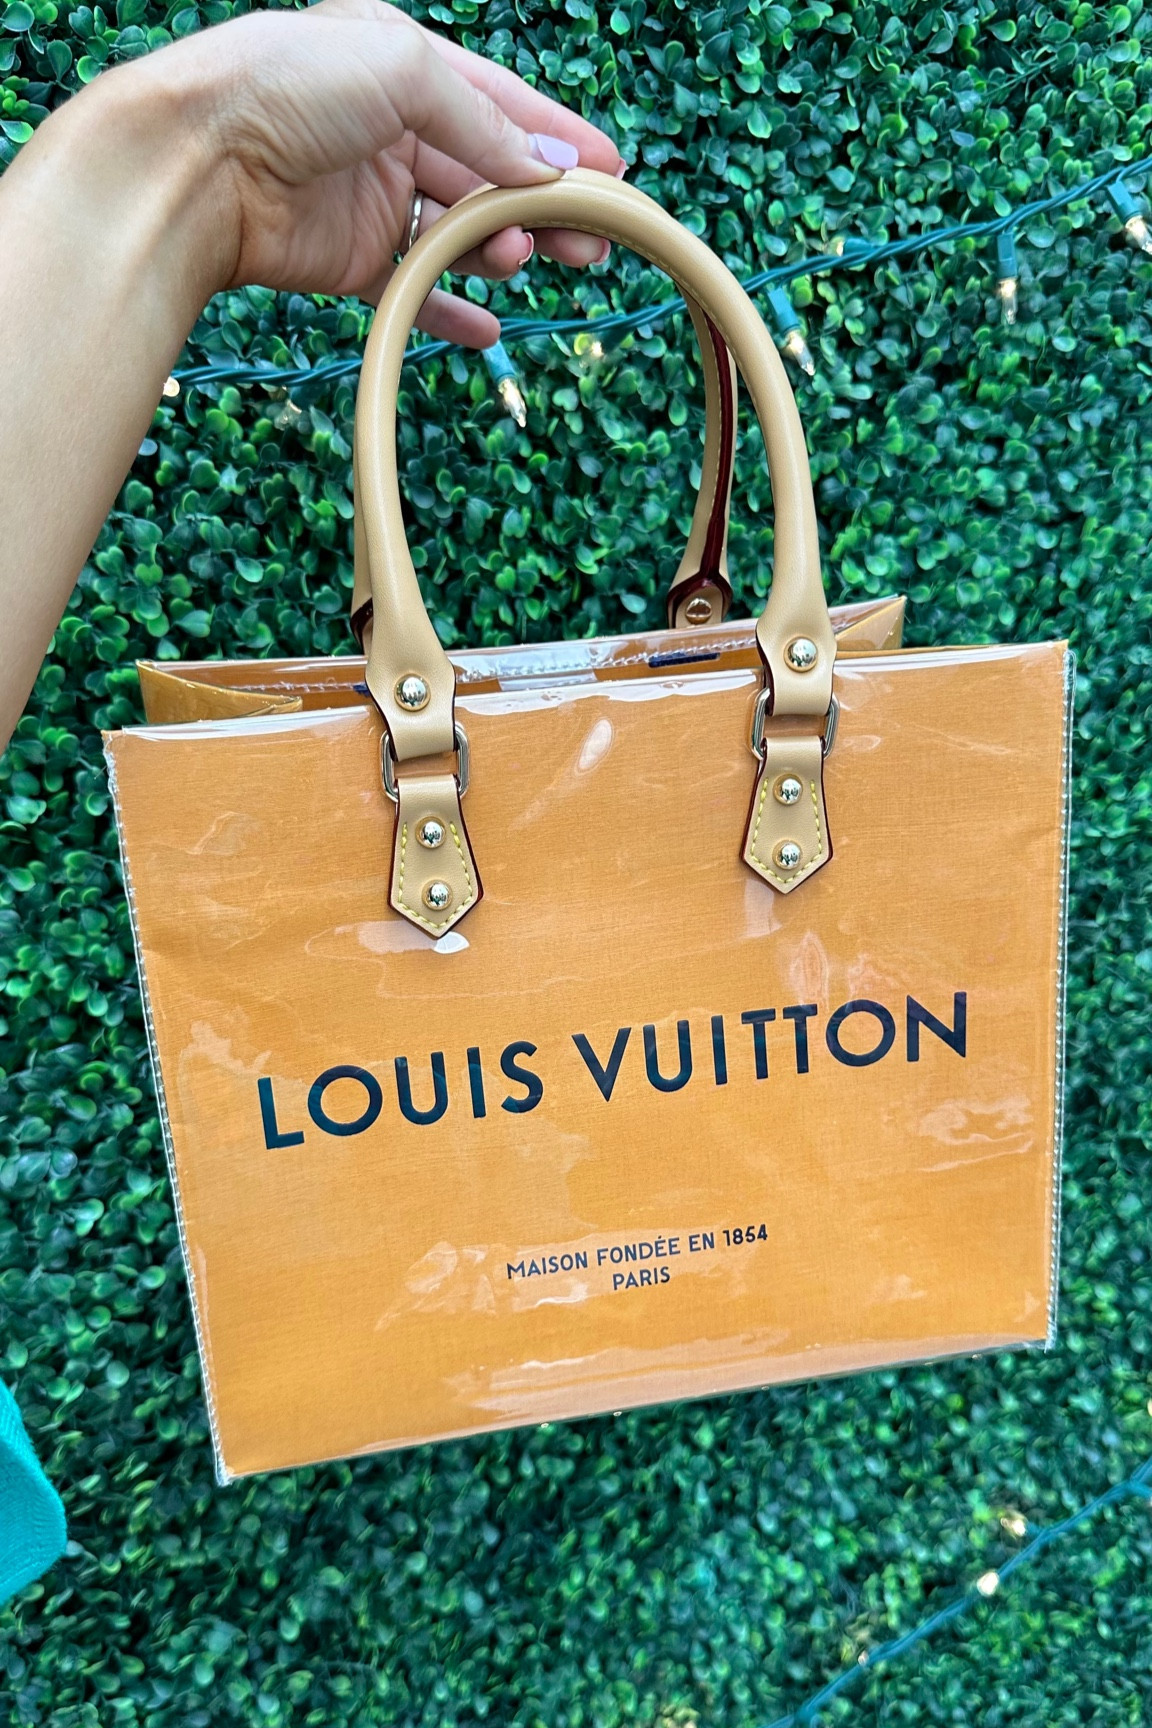 Louis Vuitton Handbags for sale in Eagle Mountain, California